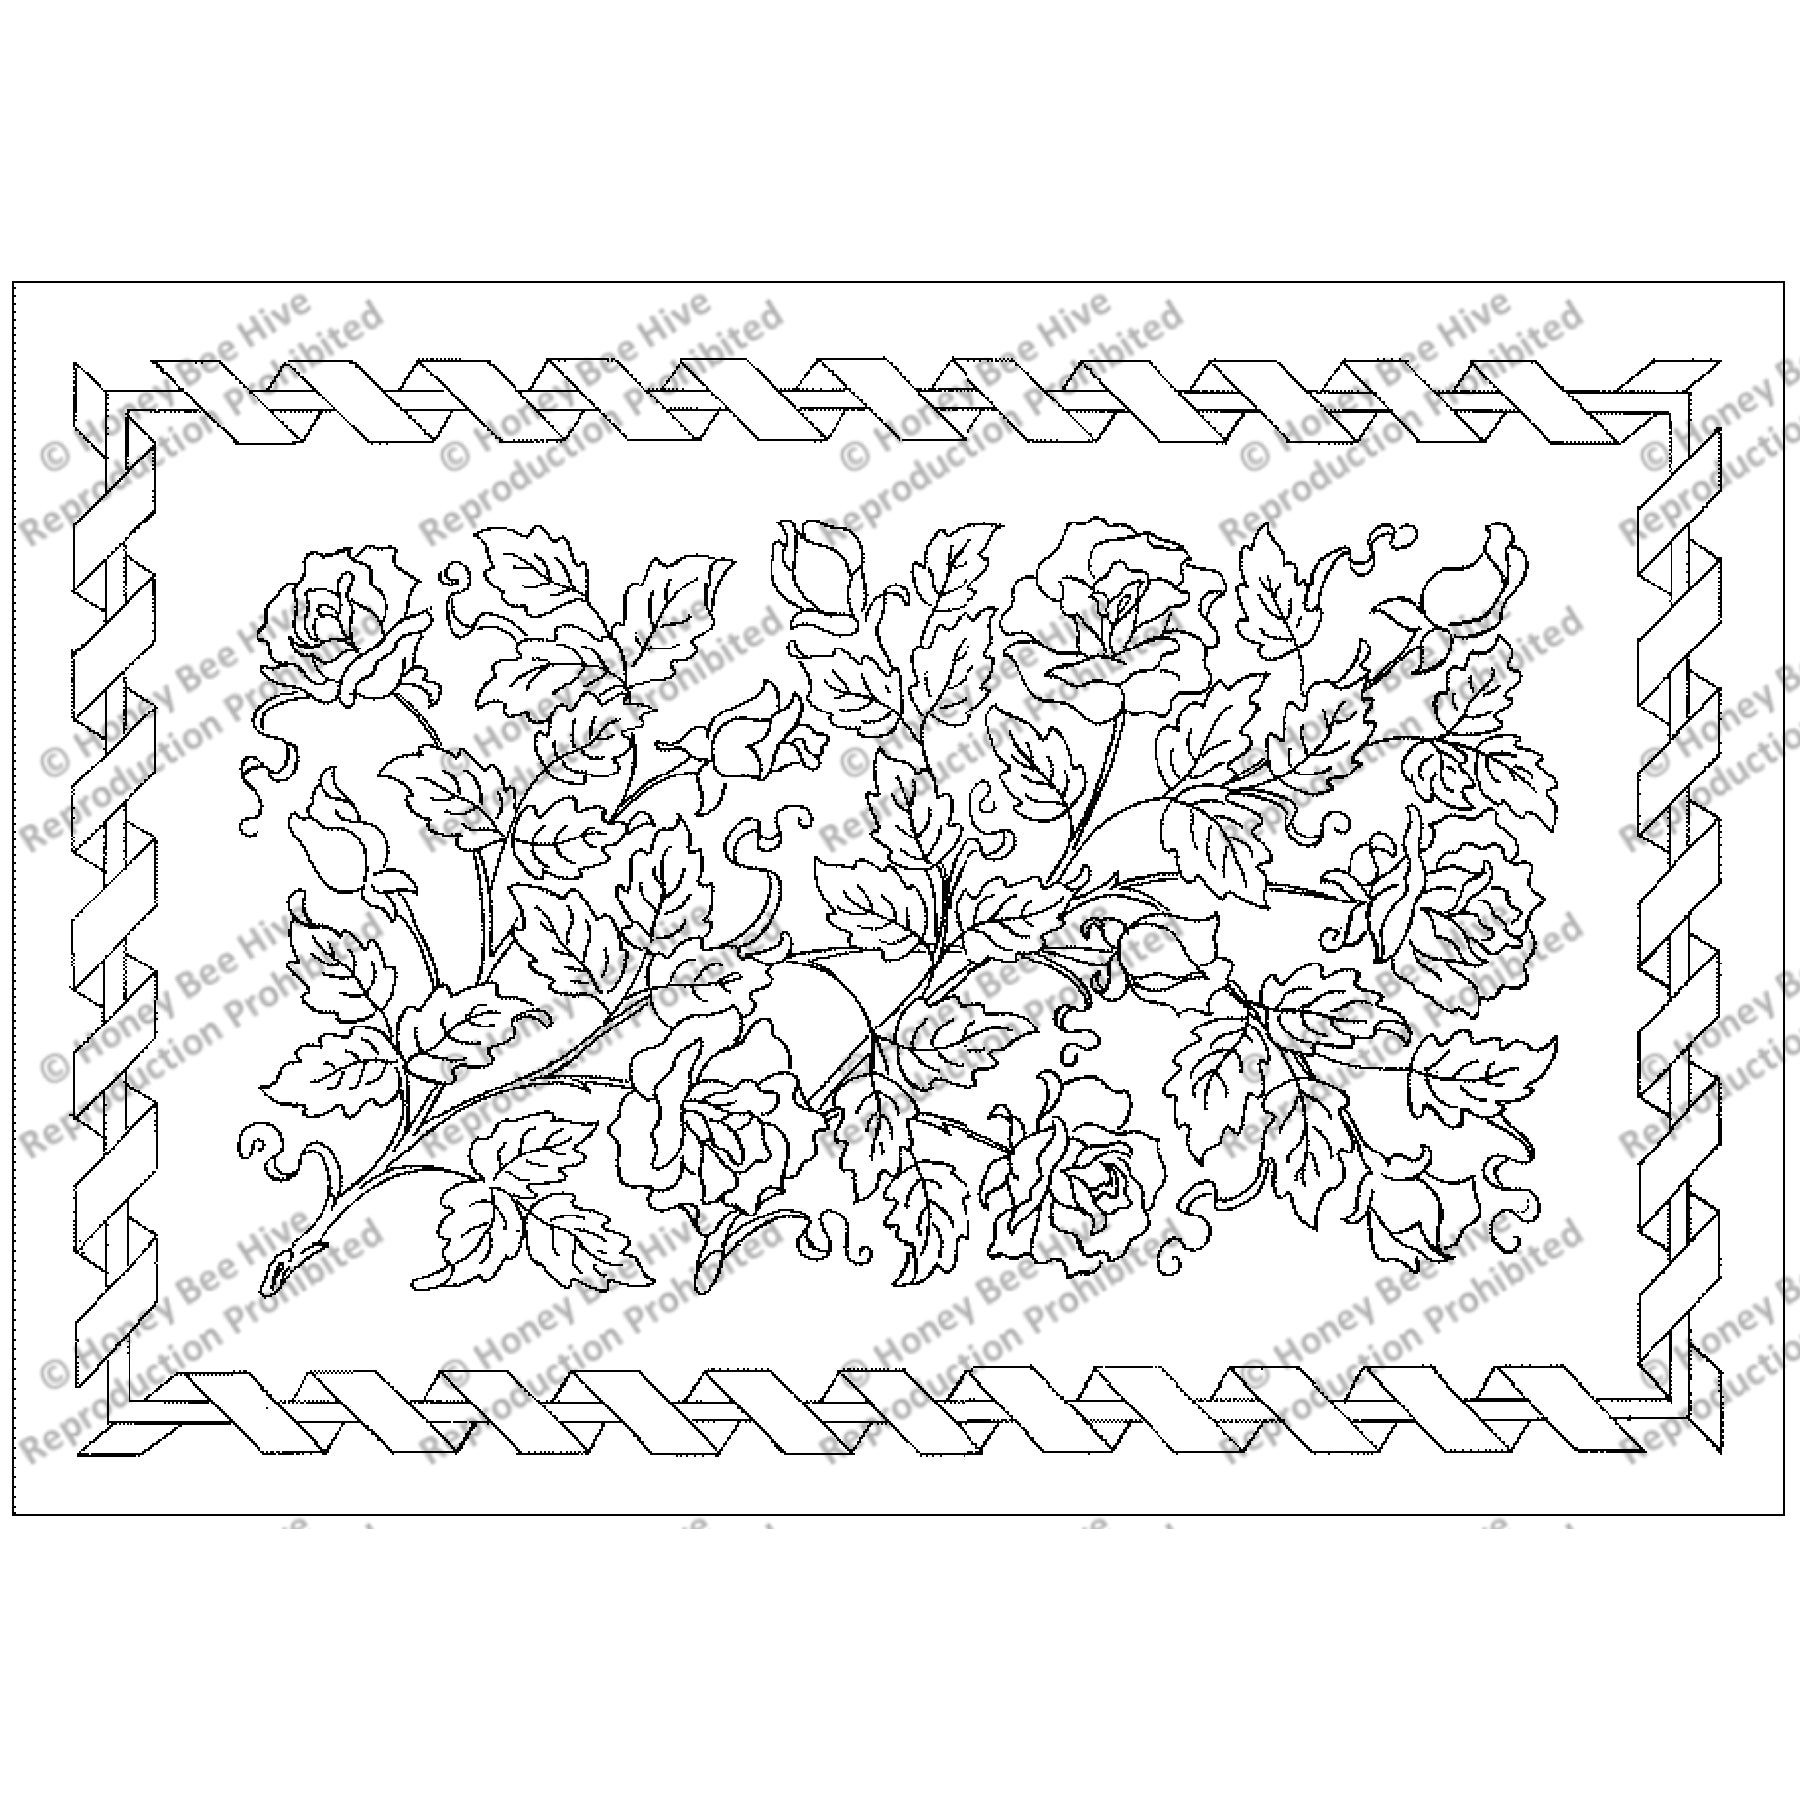 Regal Roses, rug hooking pattern